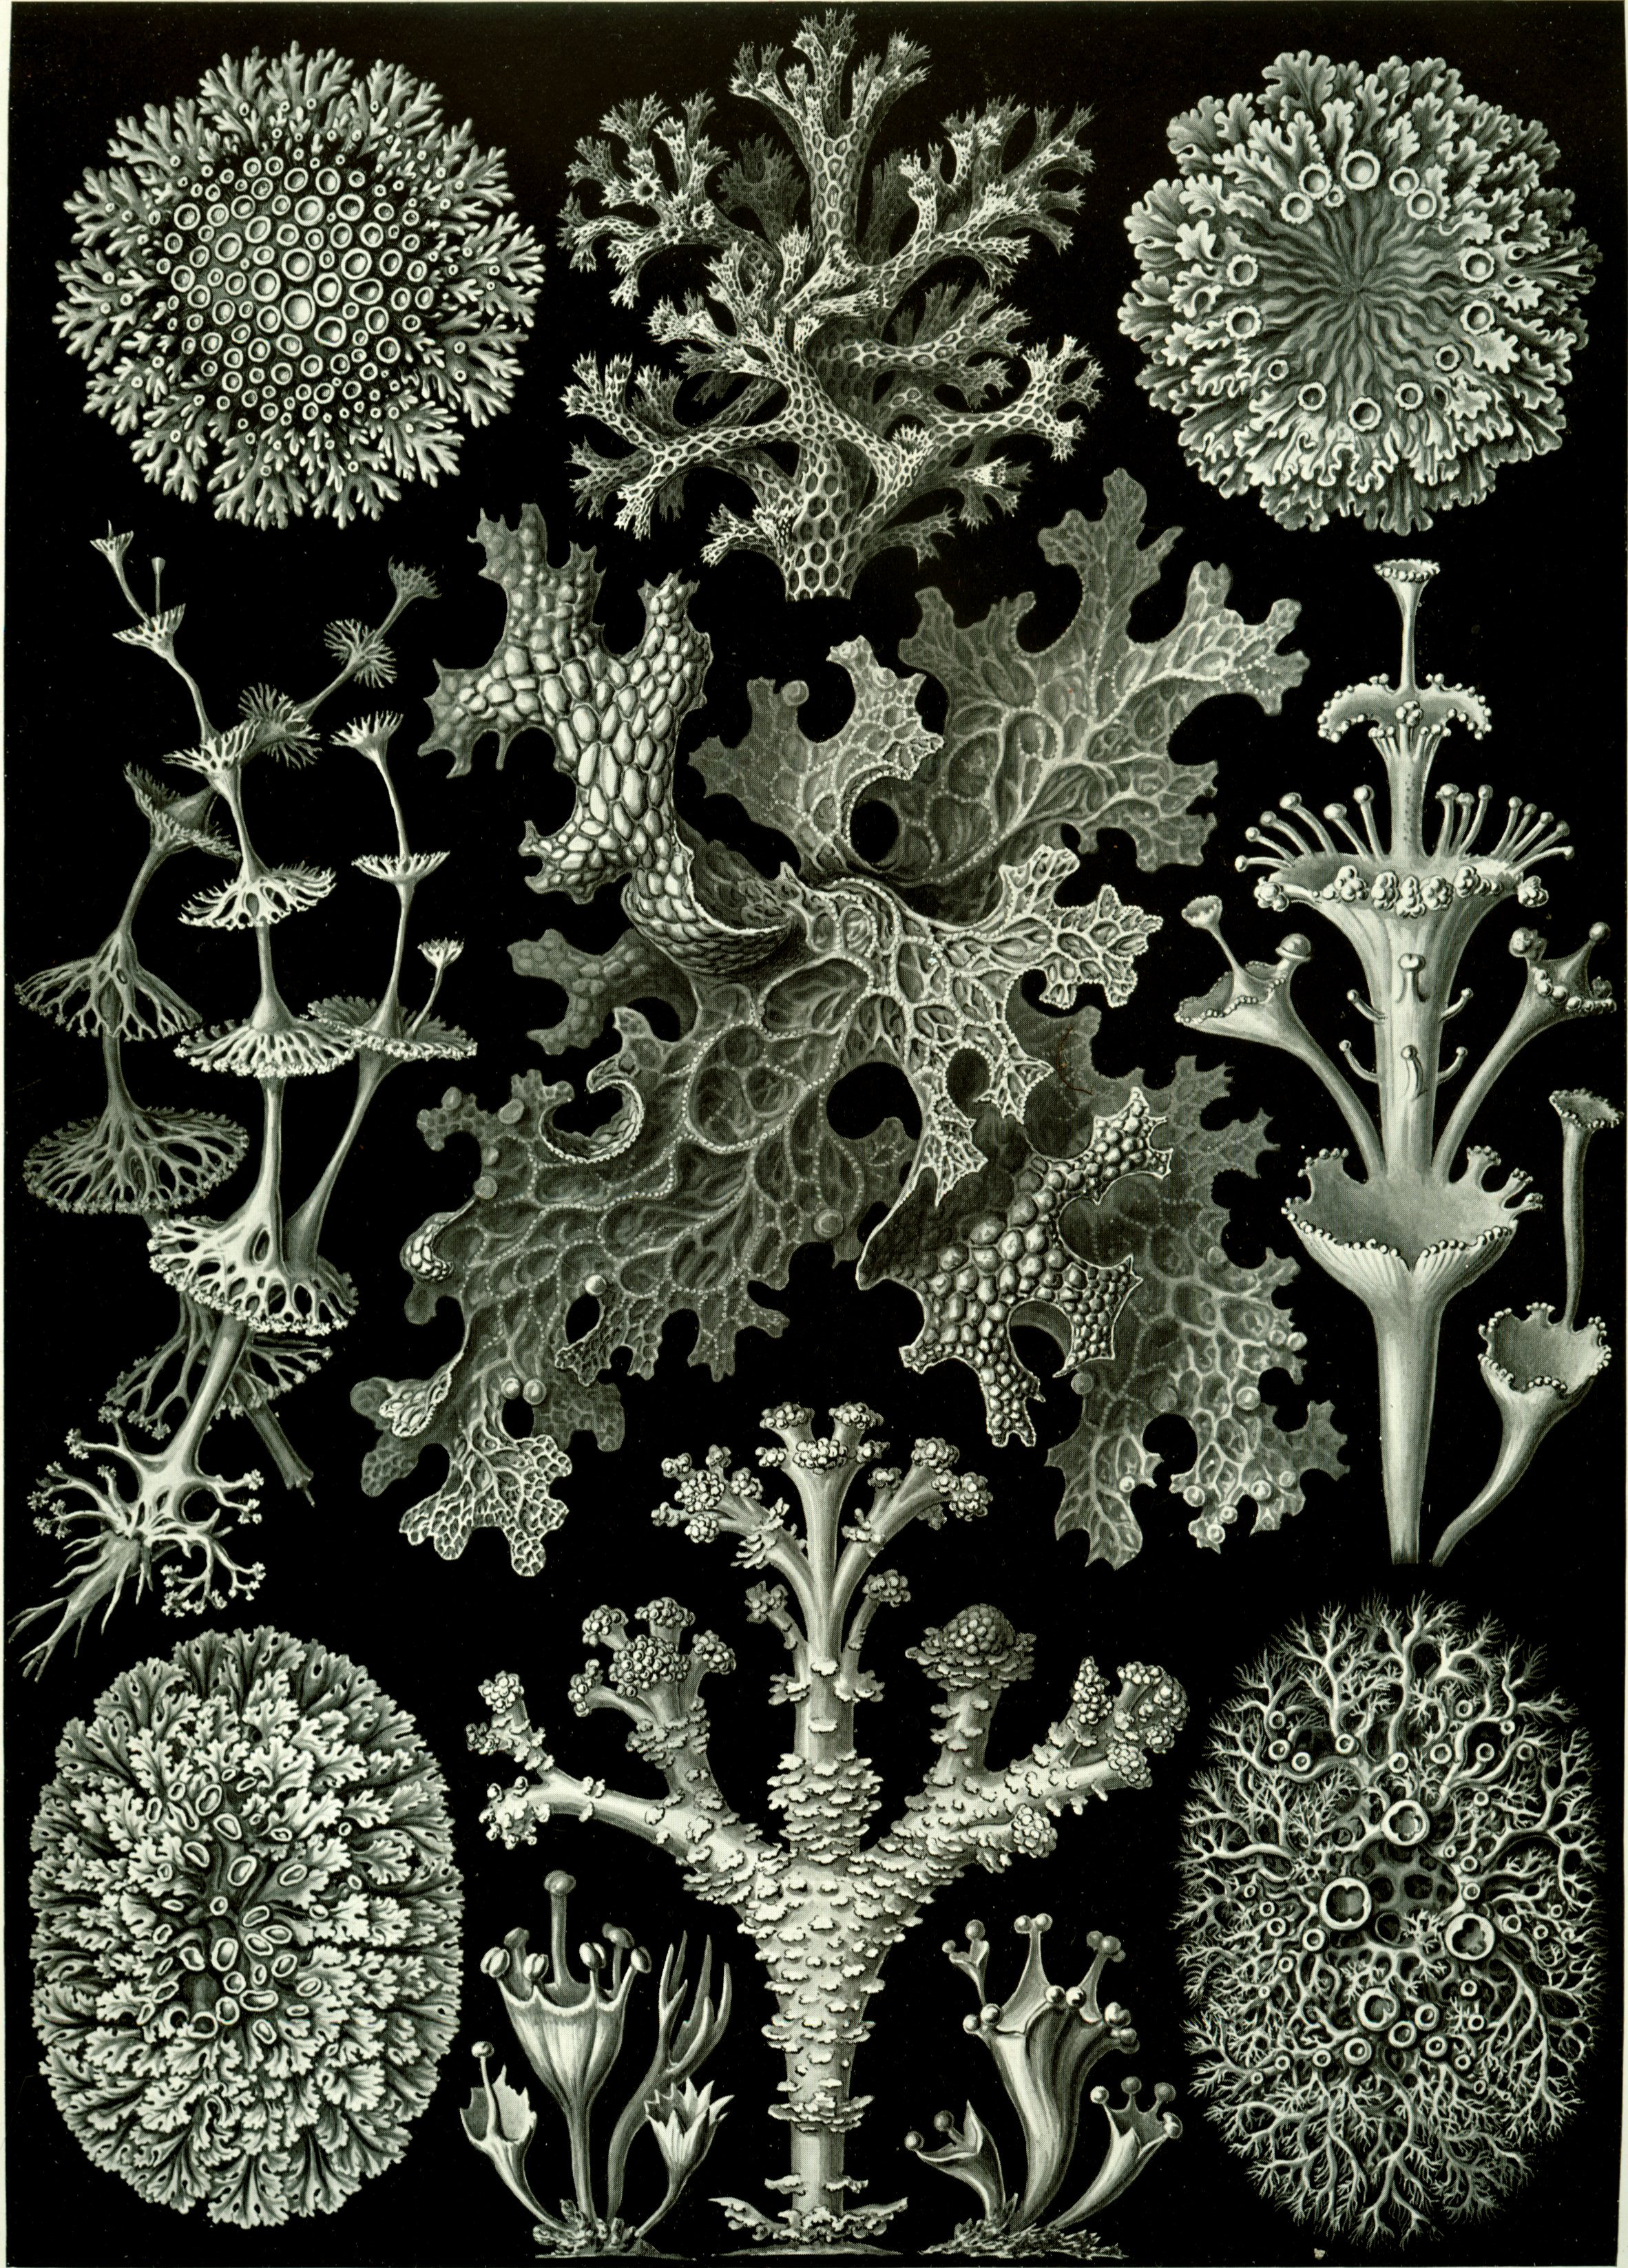 Lichens from Ernst Haeckel’s Kunstformen der Natur, 1904.